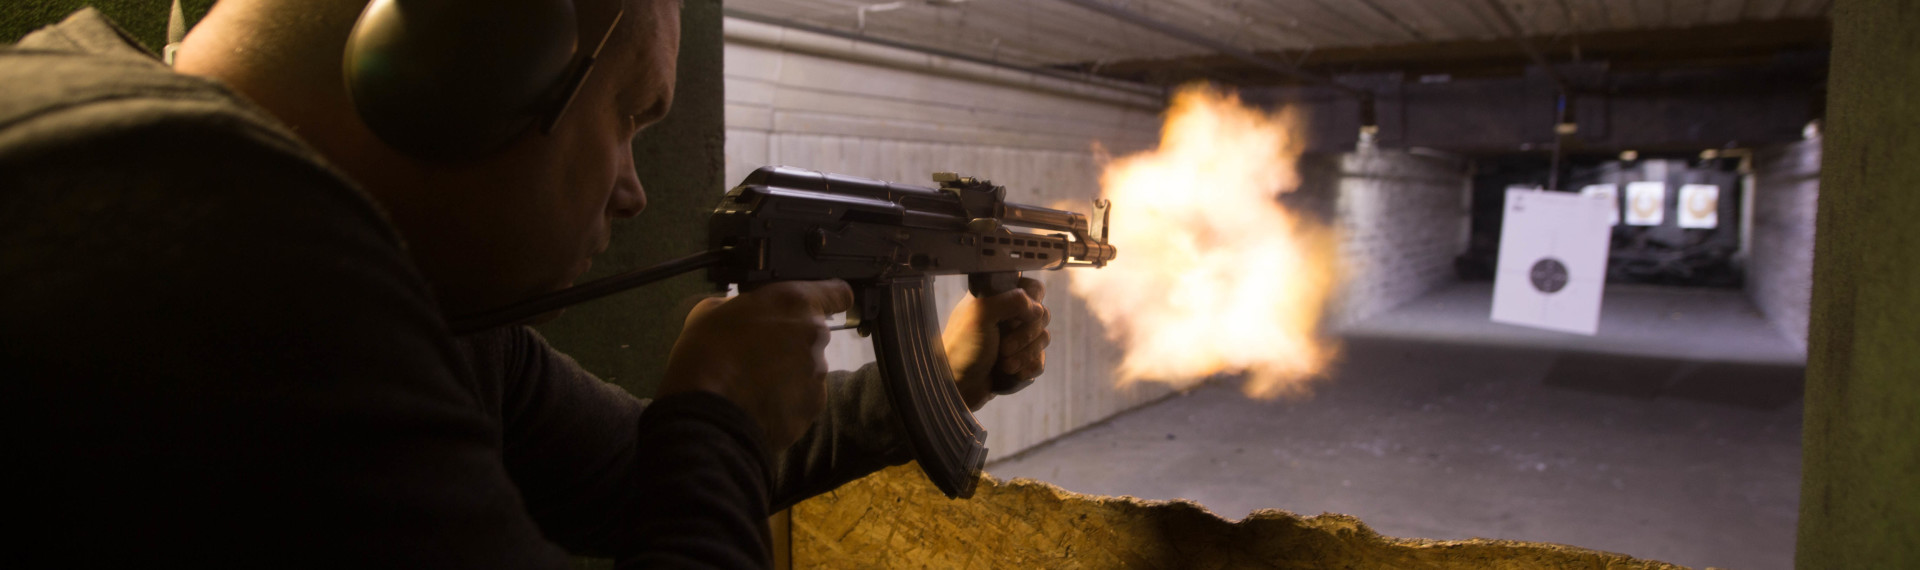 Som På Film: Skyd Med Ægte Pistol - Prøv pistoler i Berlin